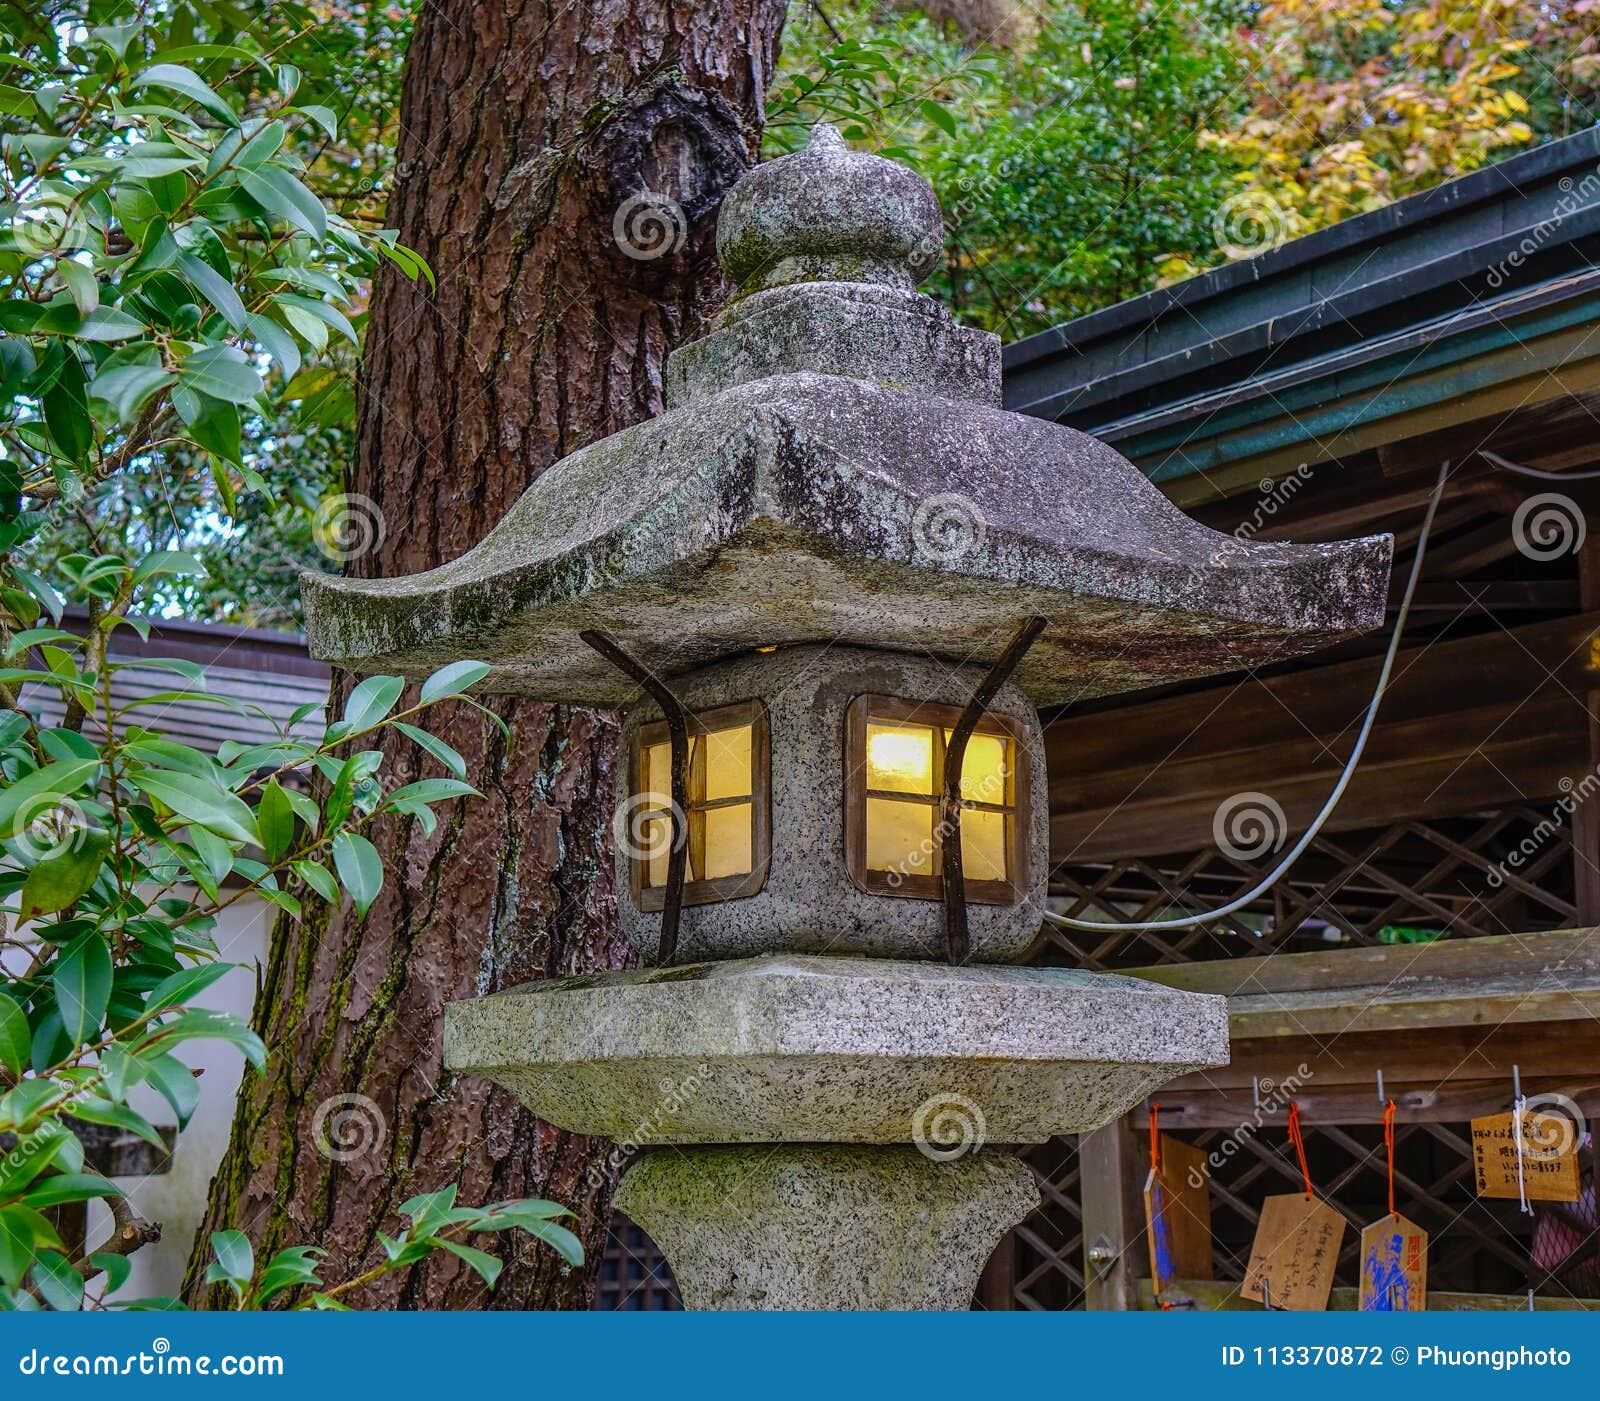 Japanese Stone Lantern at Garden Stock Photo - Image of japanese, peace ...